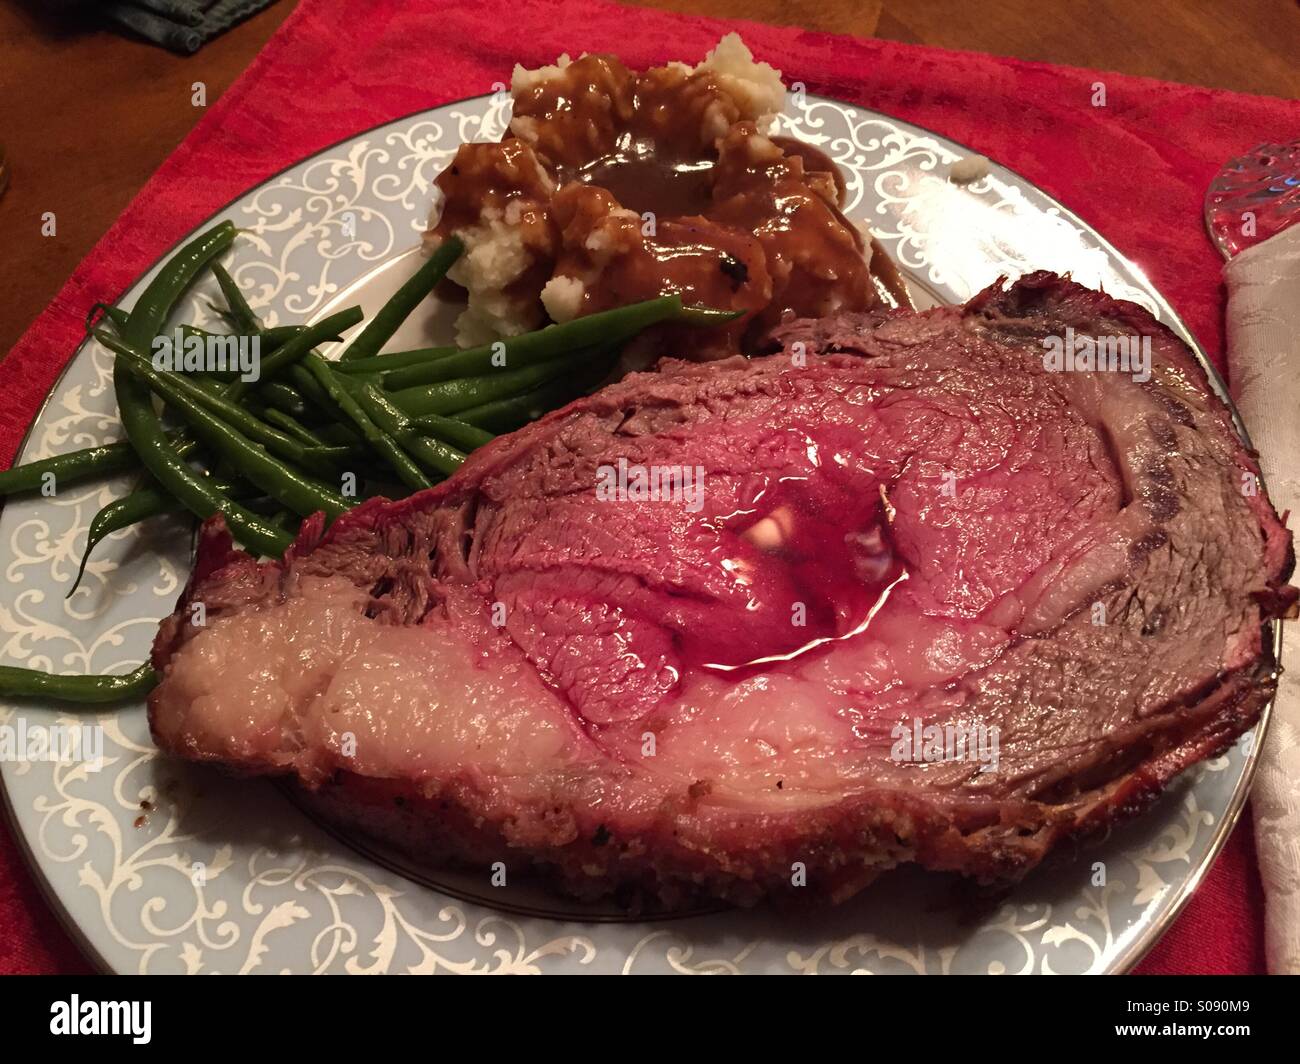 Christmas dinner plate: prime rib roast with au jus. Stock Photo